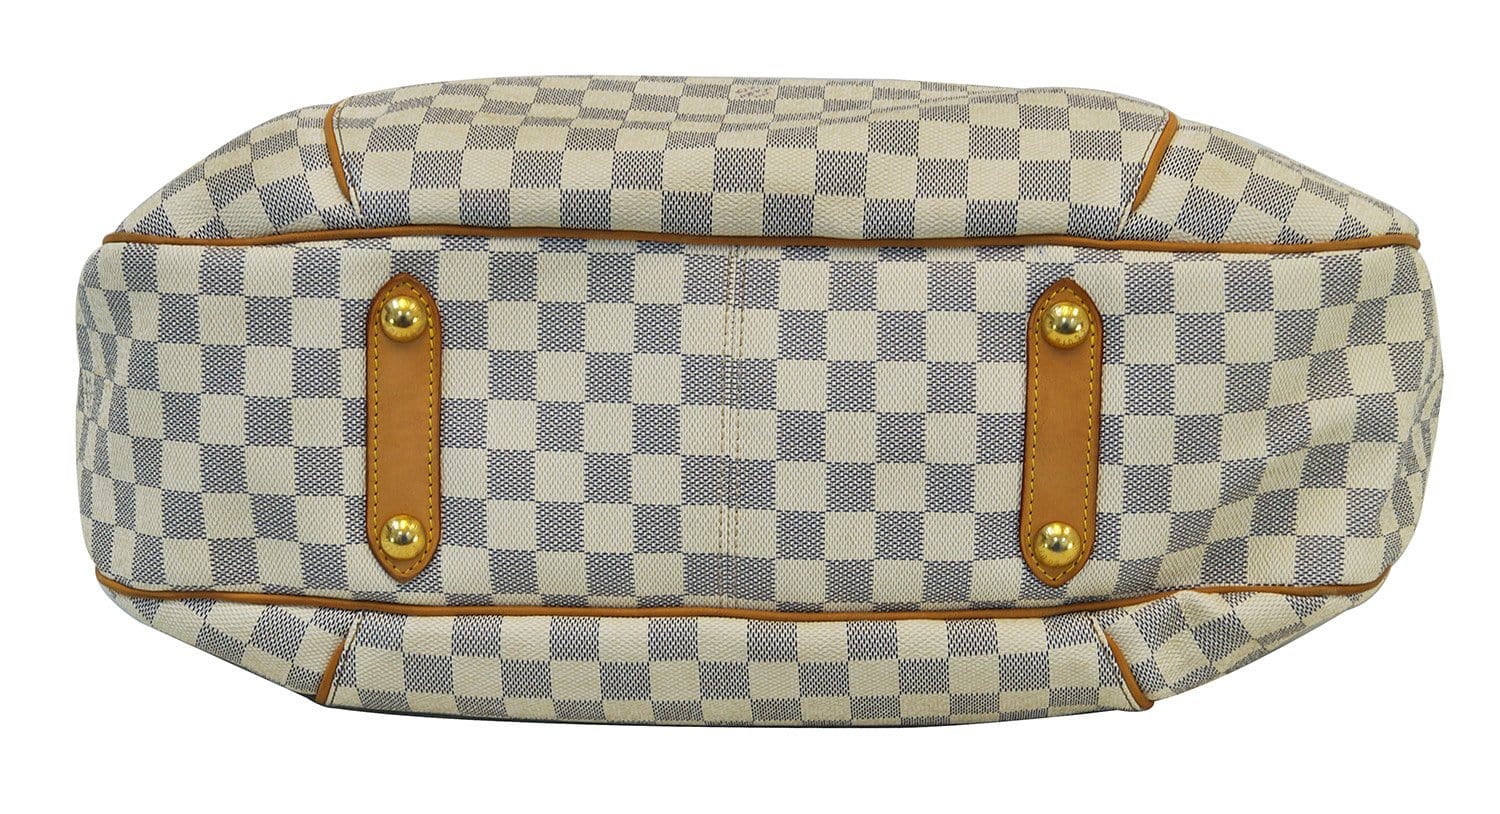 LOUIS VUITTON Monogram Galliera GM Shoulder Tote Handbag - 30% Off